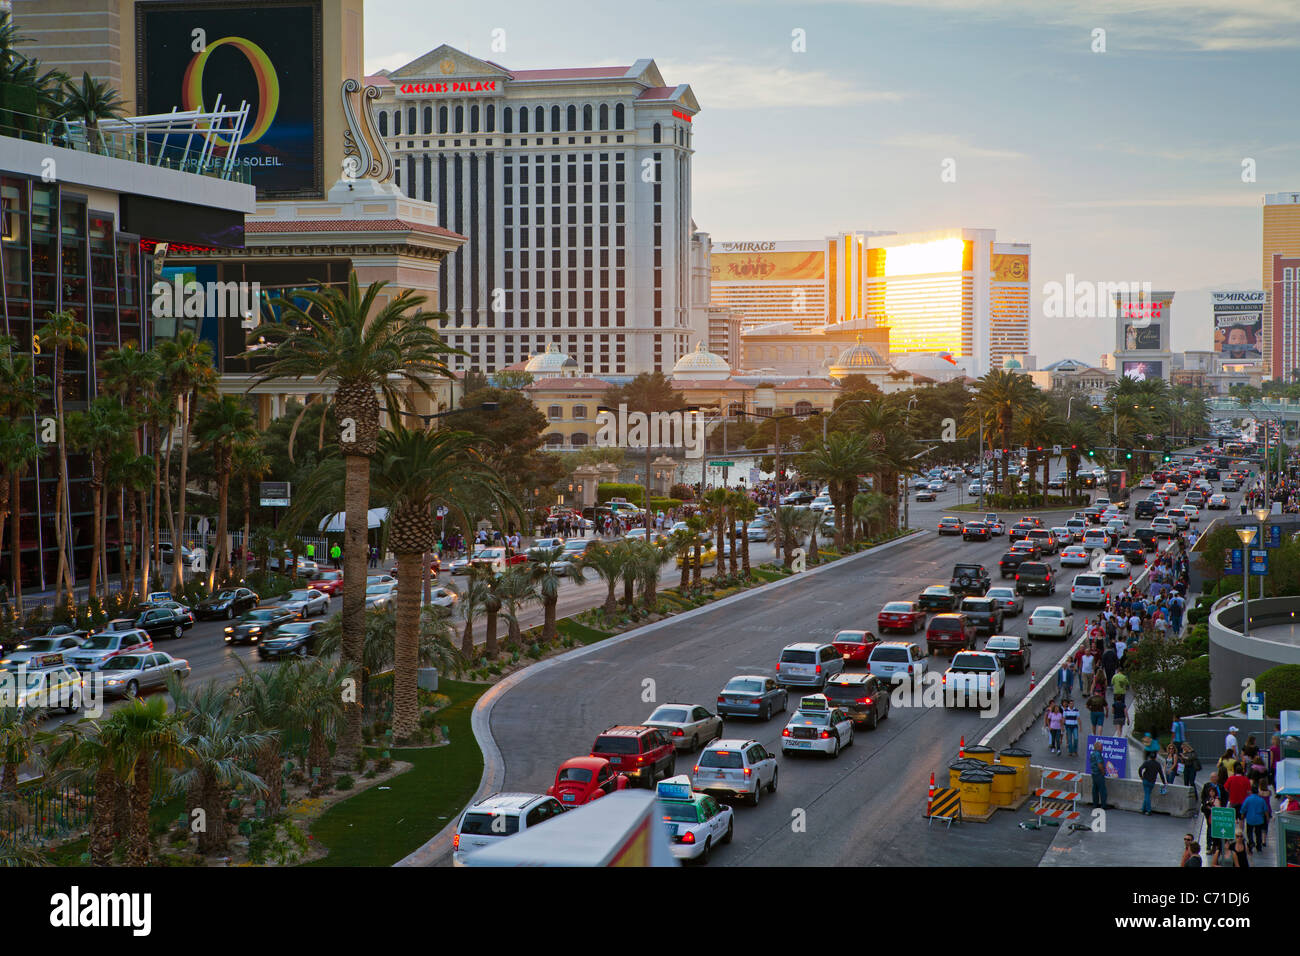 Vereinigte Staaten von Amerika, Nevada, Las Vegas, Hotels und Casinos am Strip entlang Stockfoto